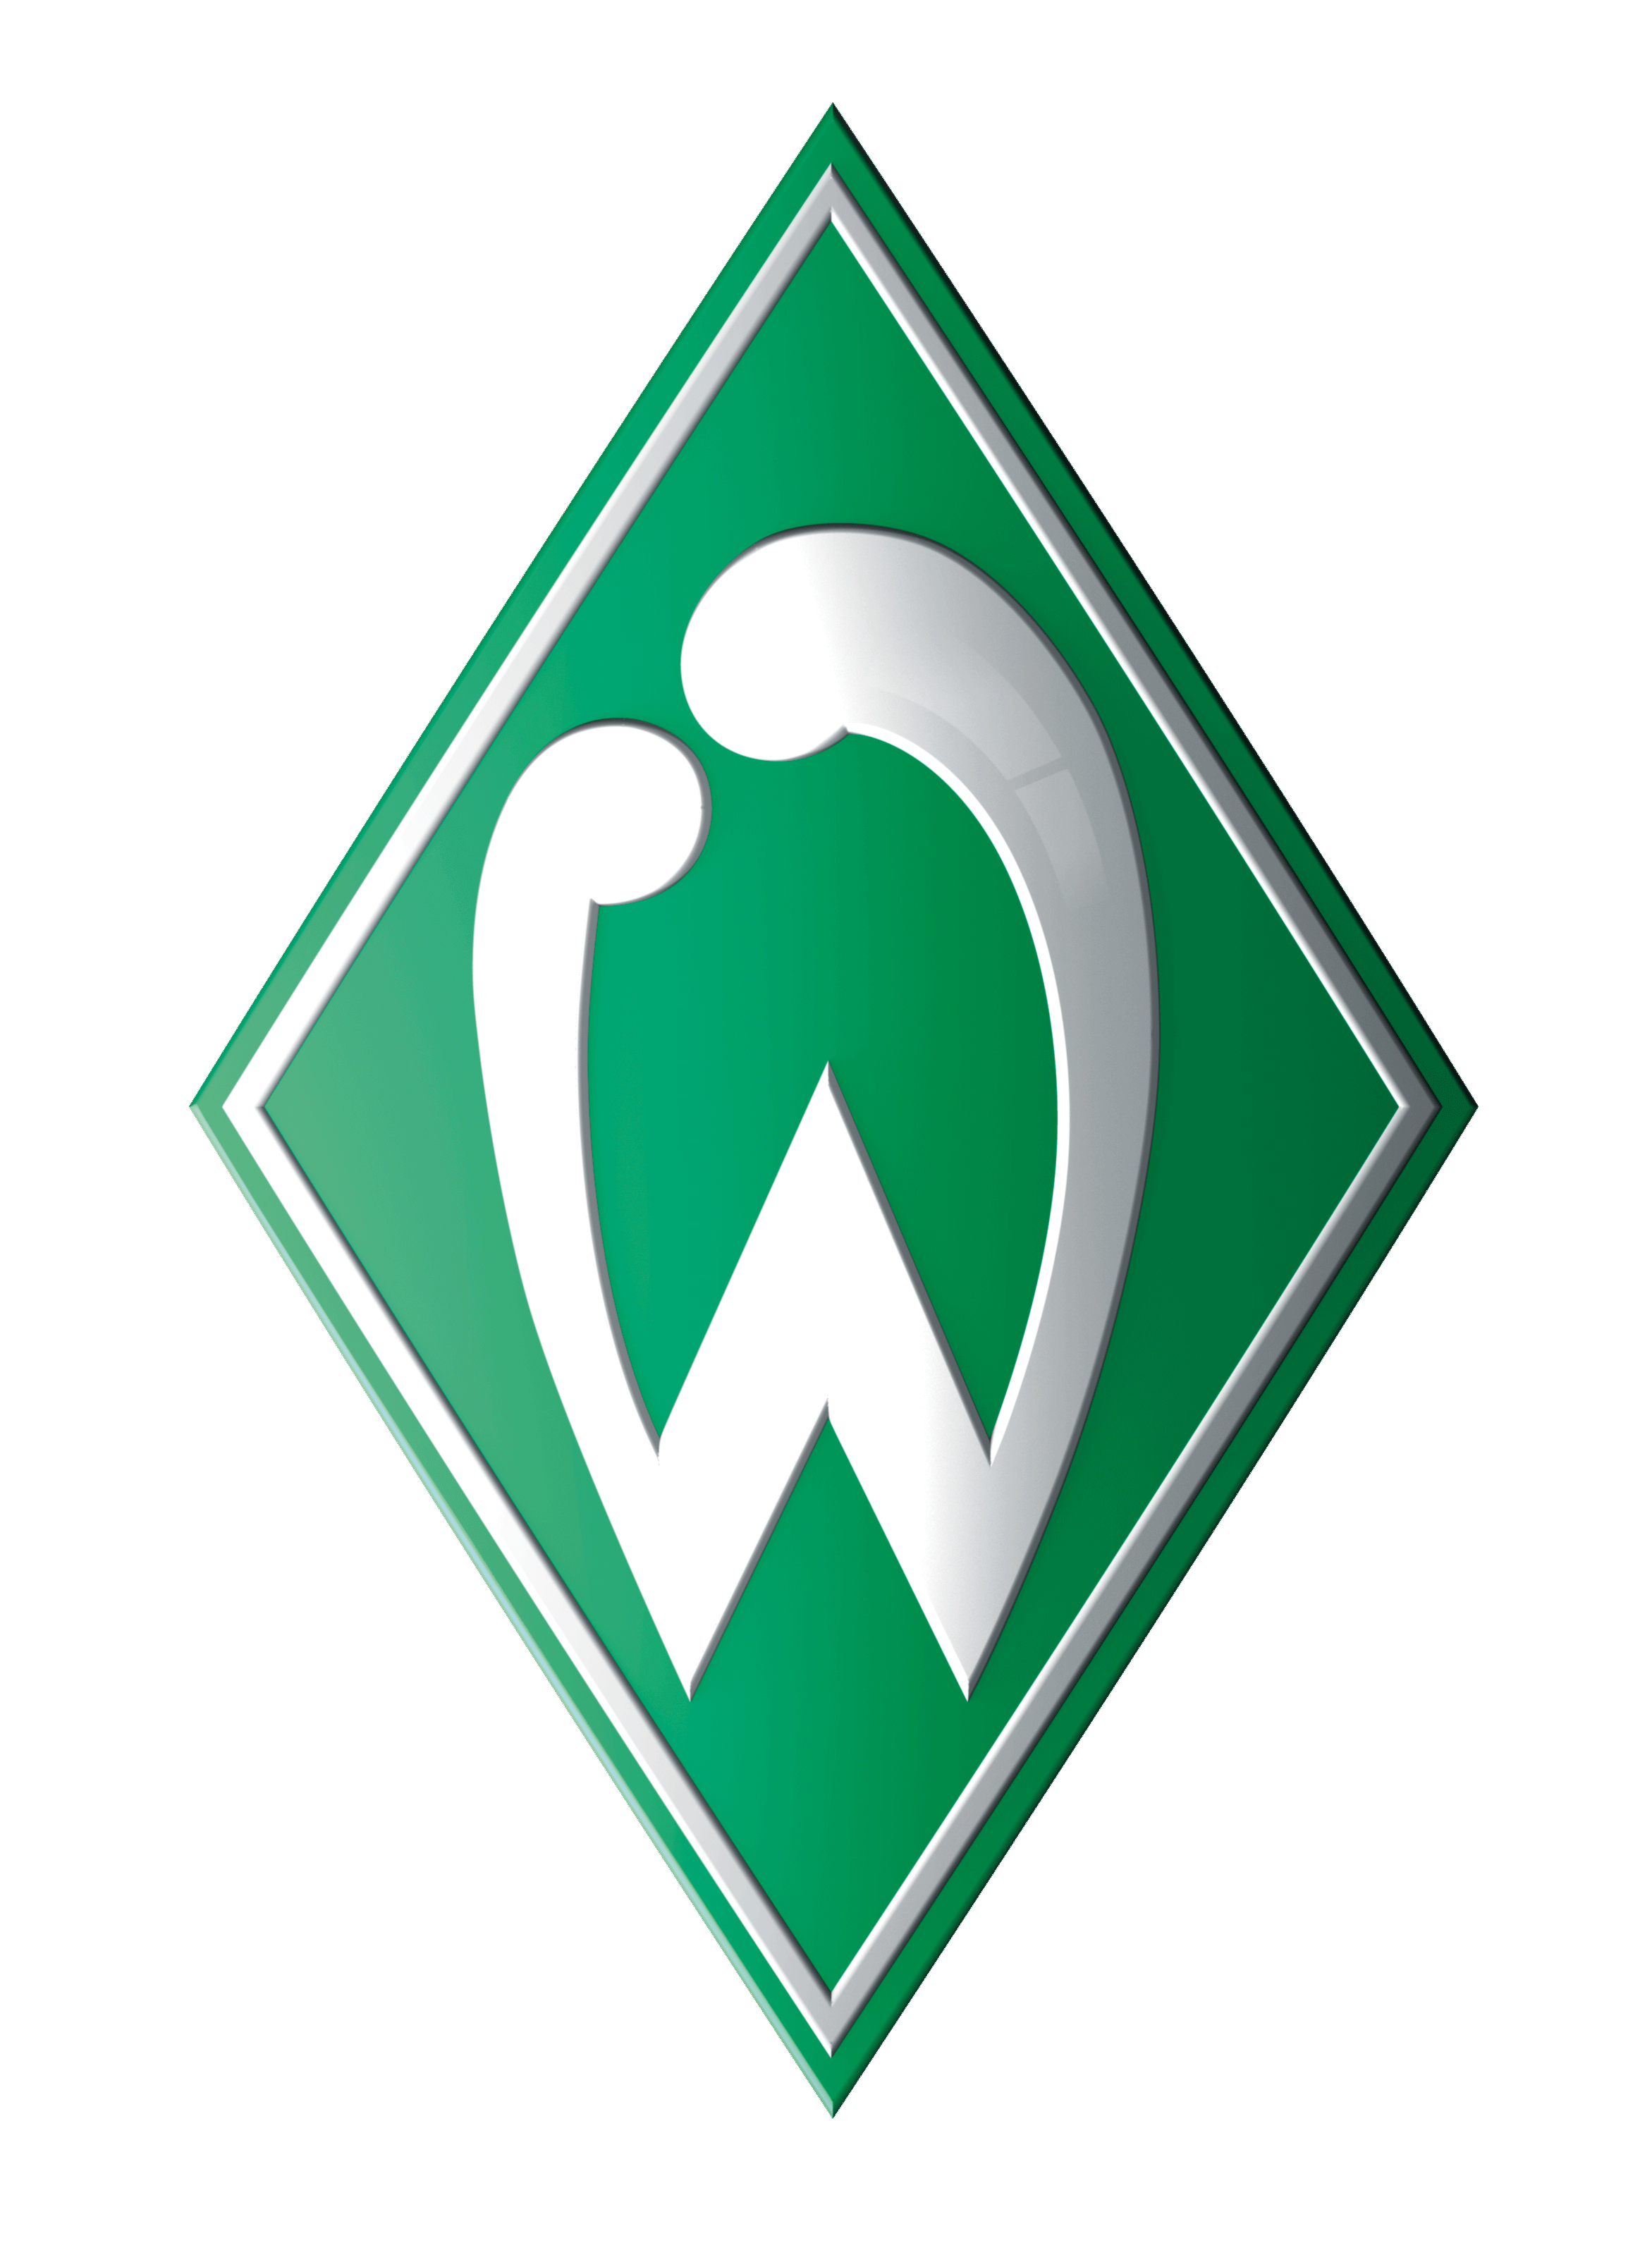 Logo des SV Werder Bremen - eine grüne Raute mit weißem Rahmen und einem großen W in der Mitte